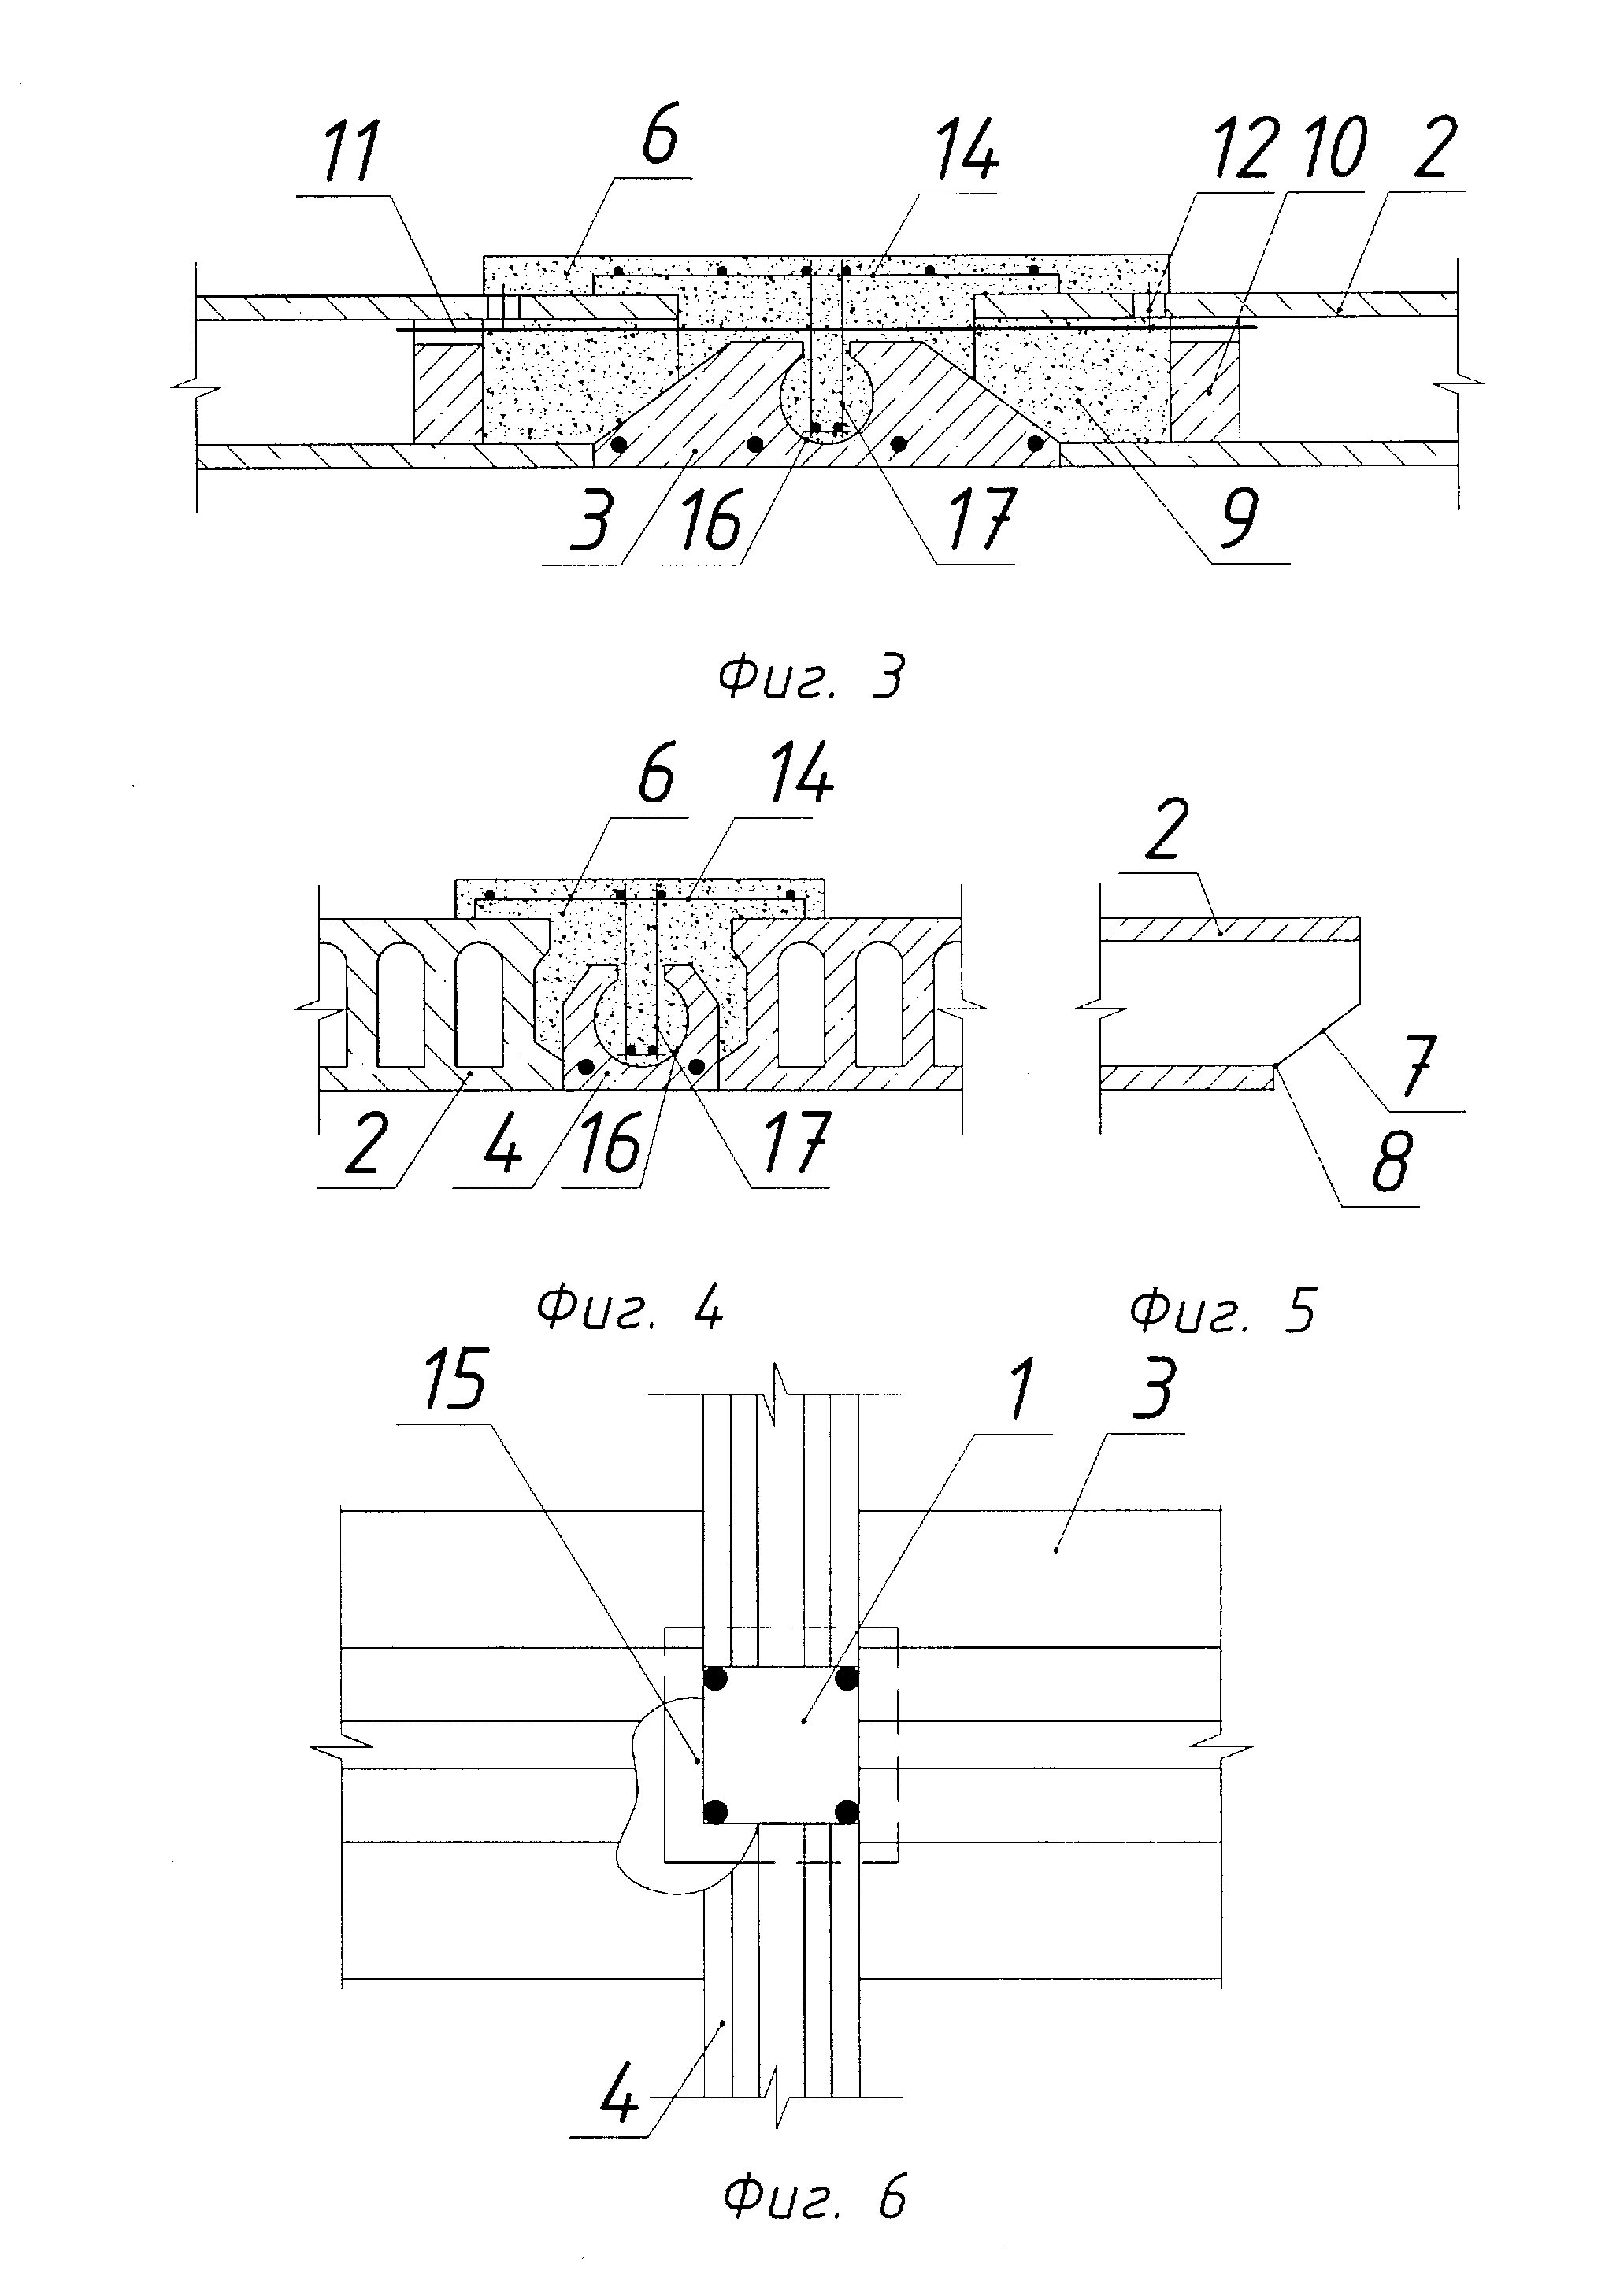 RU97405U1 - Сборно-монолитный железобетонный каркас здания - Google Patents